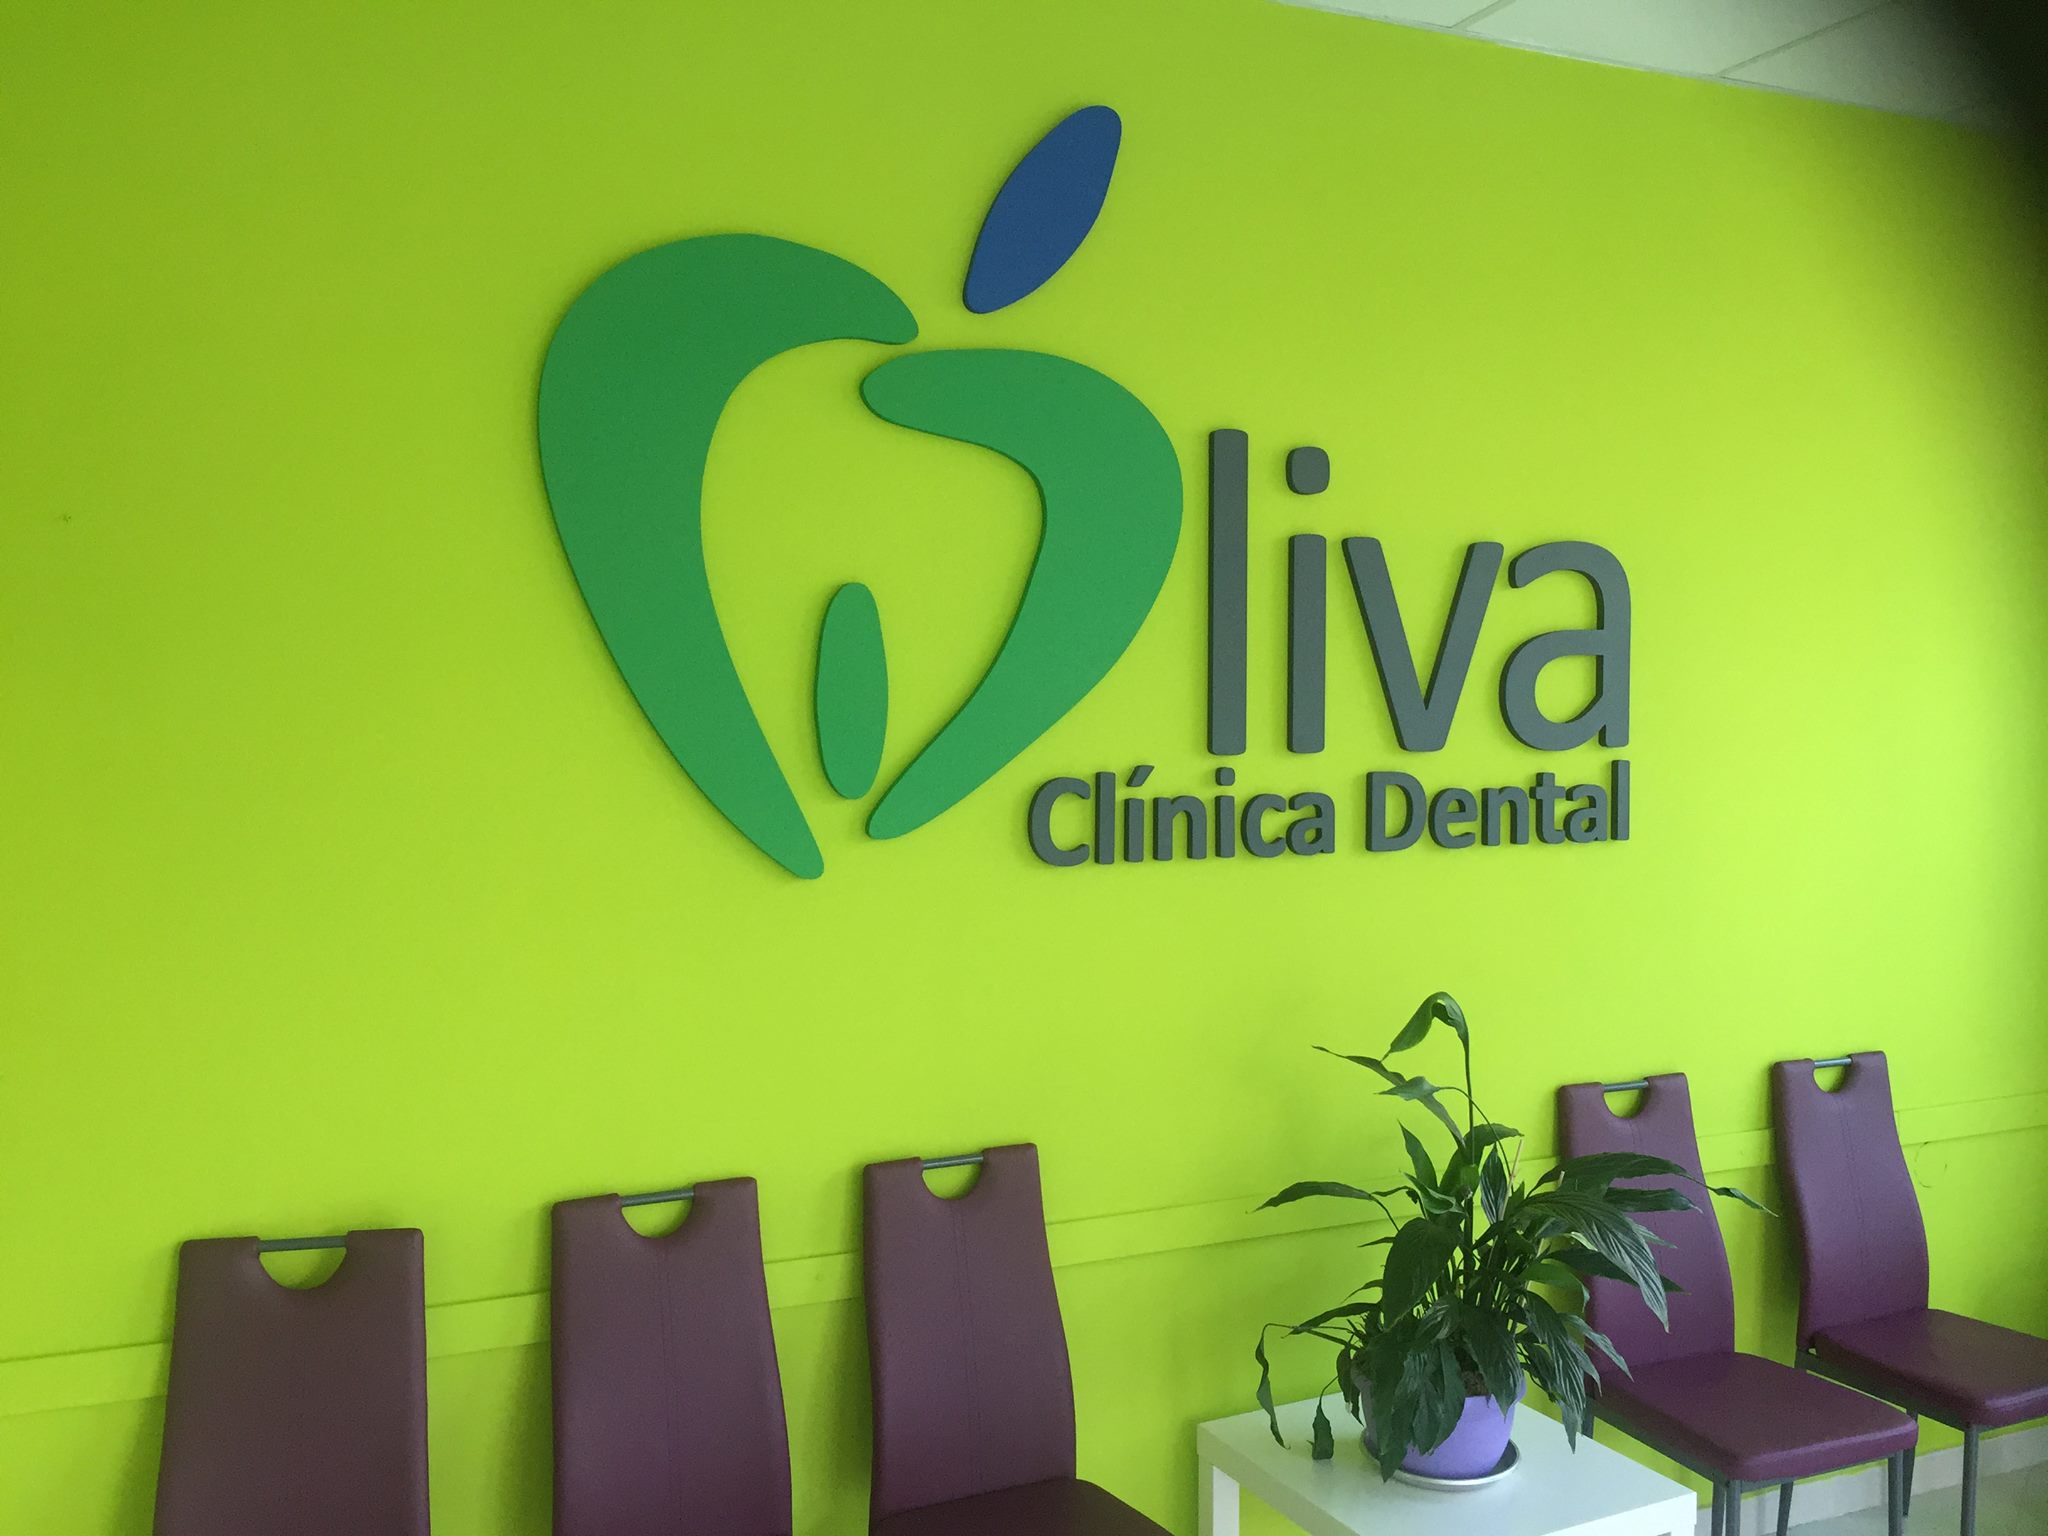 Dentista en Málaga Clínica dental Dr. Oliva